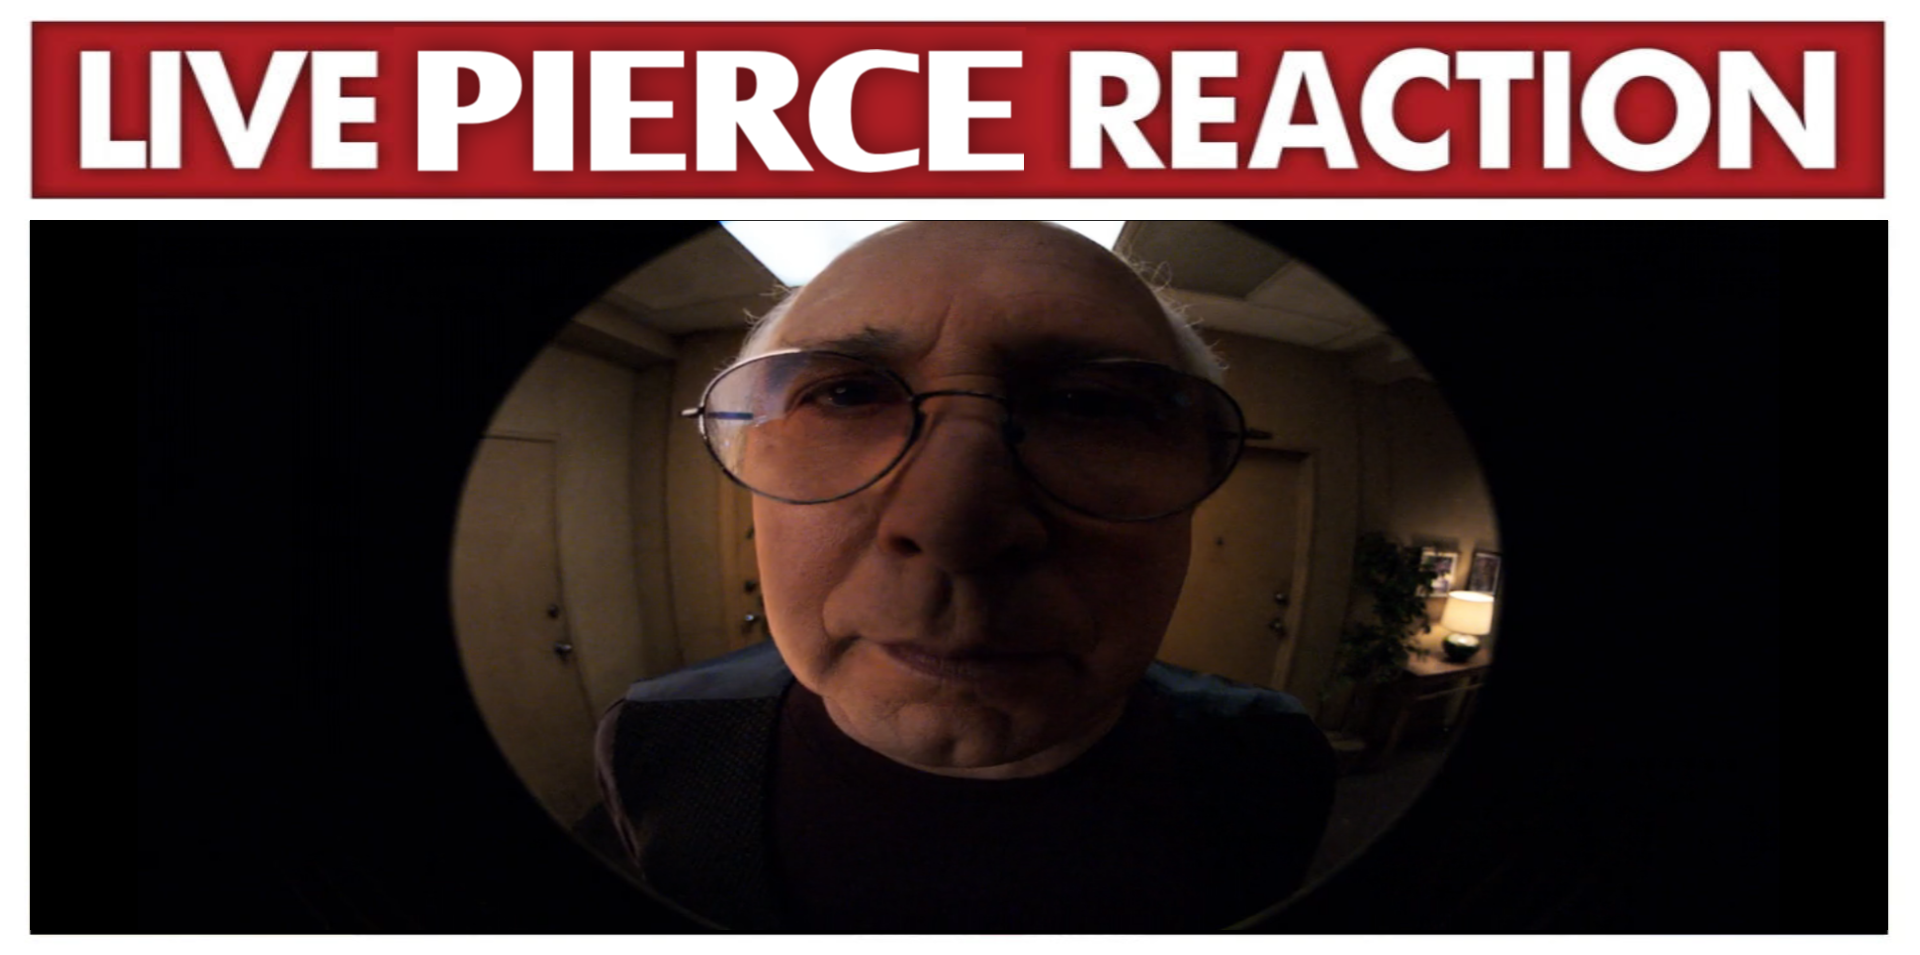 Live Pierce Reaction